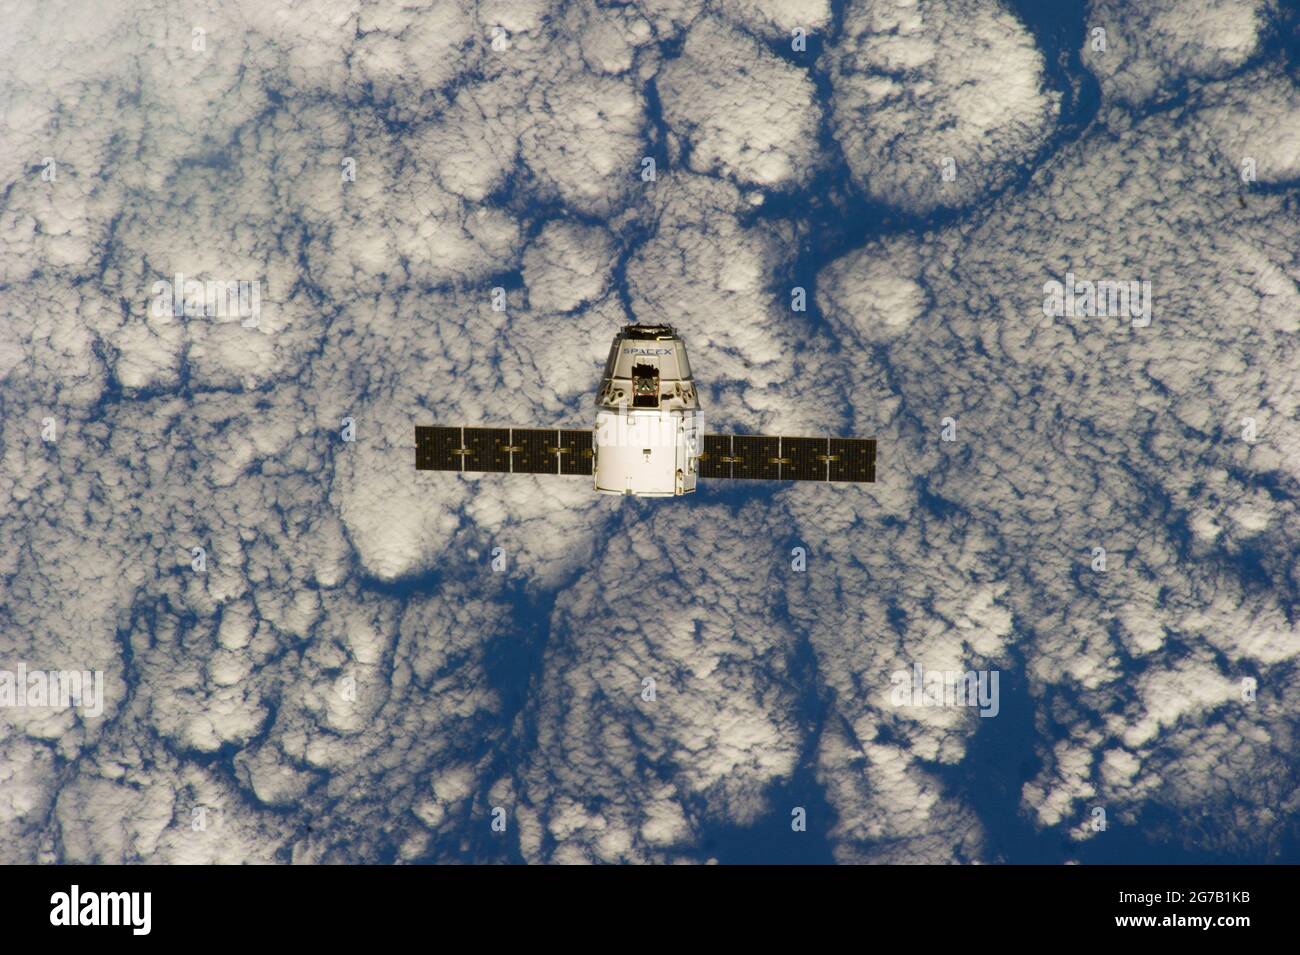 SpaceX CRS-3 Drache, während er sich der Internationalen Raumstation (ISS) nähert. Fotografiert von den Crew-Mitgliedern der Expedition 39 an Bord des orbitalen Außenpostens. Die Raumsonde wurde von der Raumstation erfasst und nach der Ankunft am 30. April 2014 erfolgreich vertäut. Eine optimierte und verbesserte Version eines NASA-Bildes / Credit NASA Stockfoto